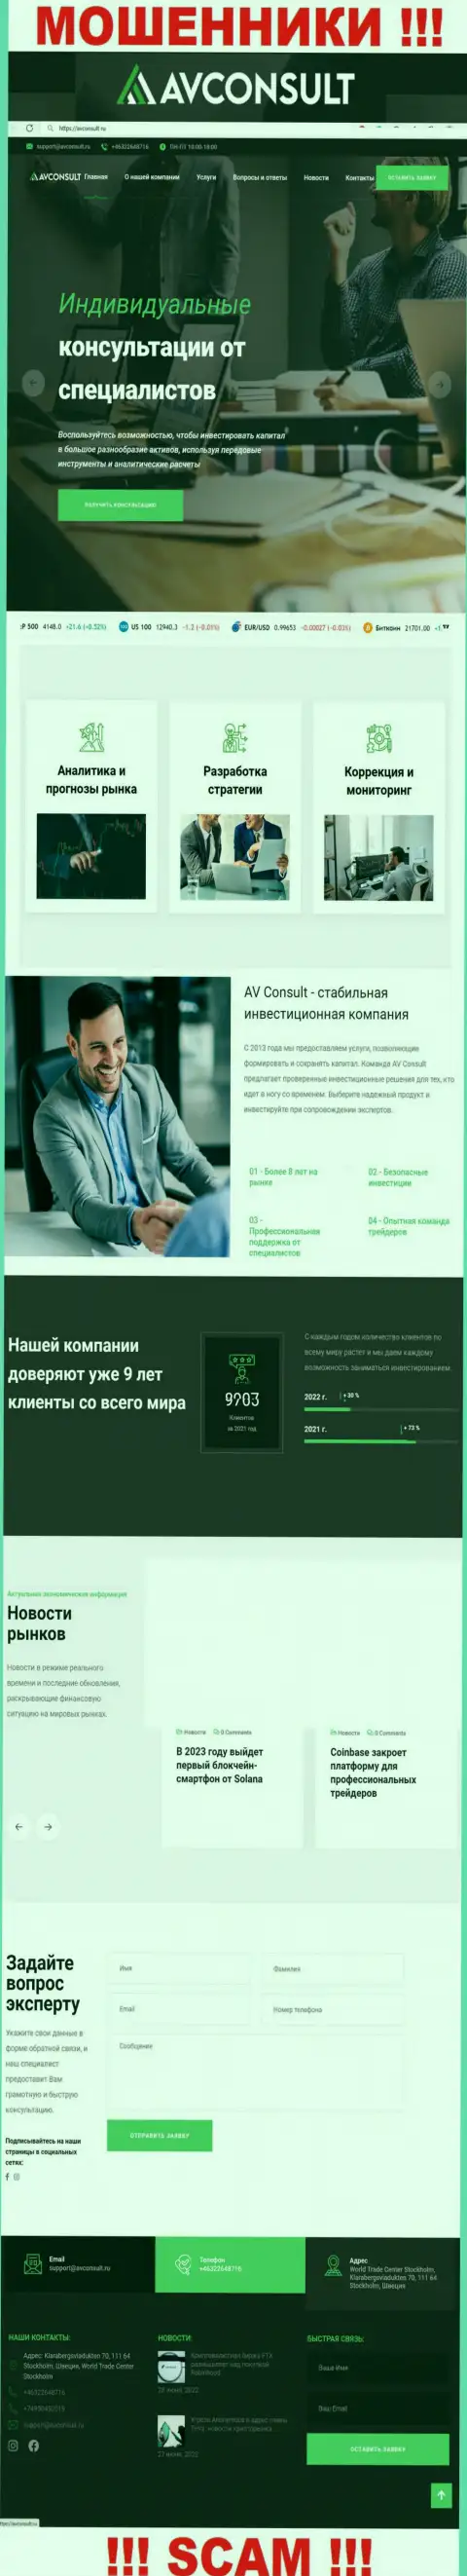 Фейковая инфа от AVConsult Ru на официальном веб-ресурсе мошенников